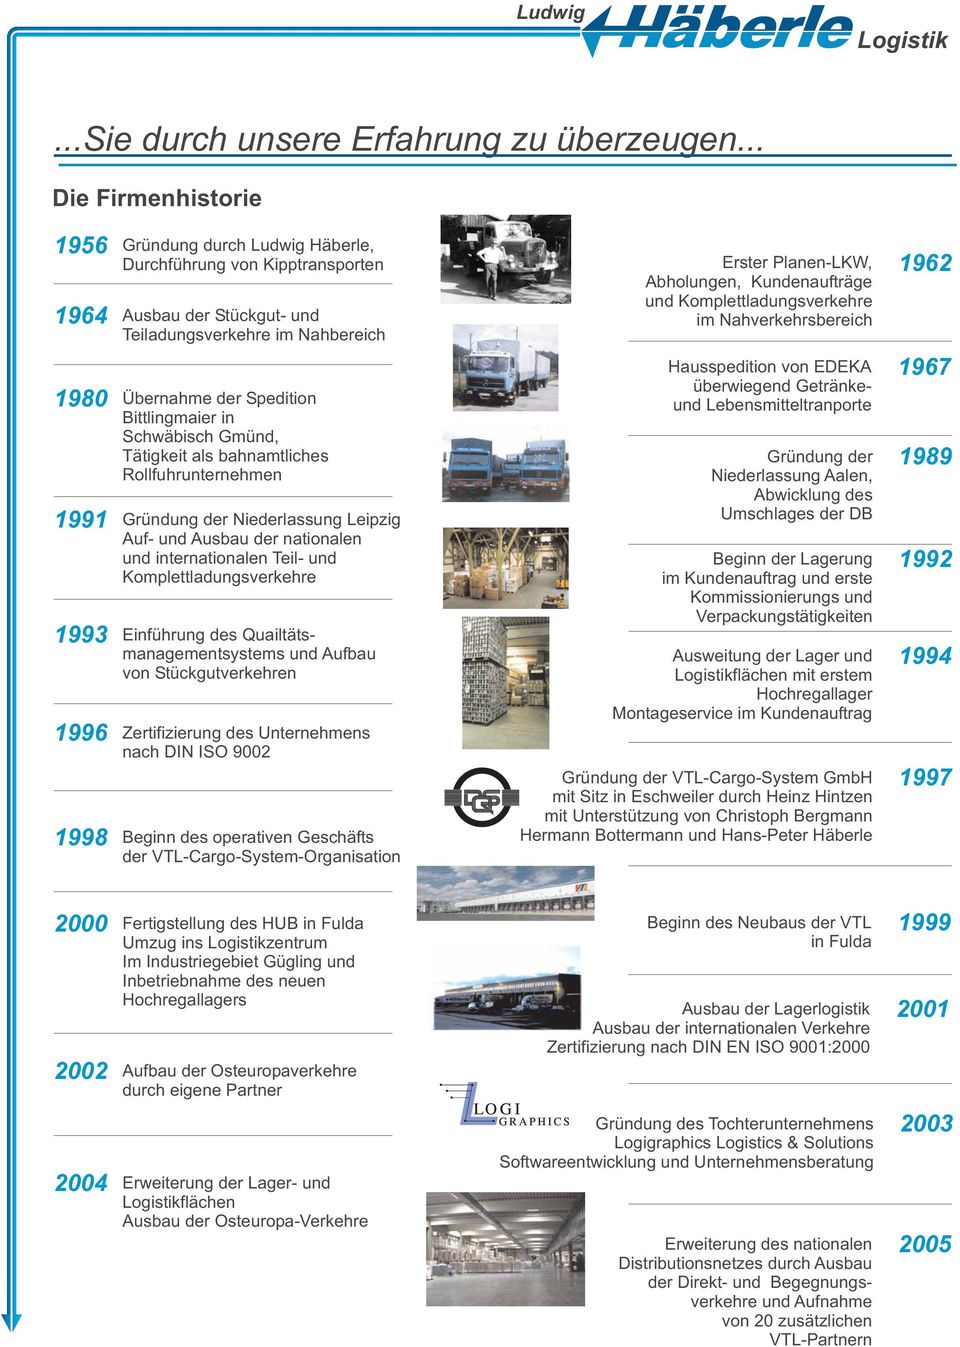 Schwäbisch Gmünd, Tätigkeit als bahnamtliches Rollfuhrunternehmen 1991 Gründung der Niederlassung Leipzig Auf- und Ausbau der nationalen und internationalen Teil- und Komplettladungsverkehre 1993